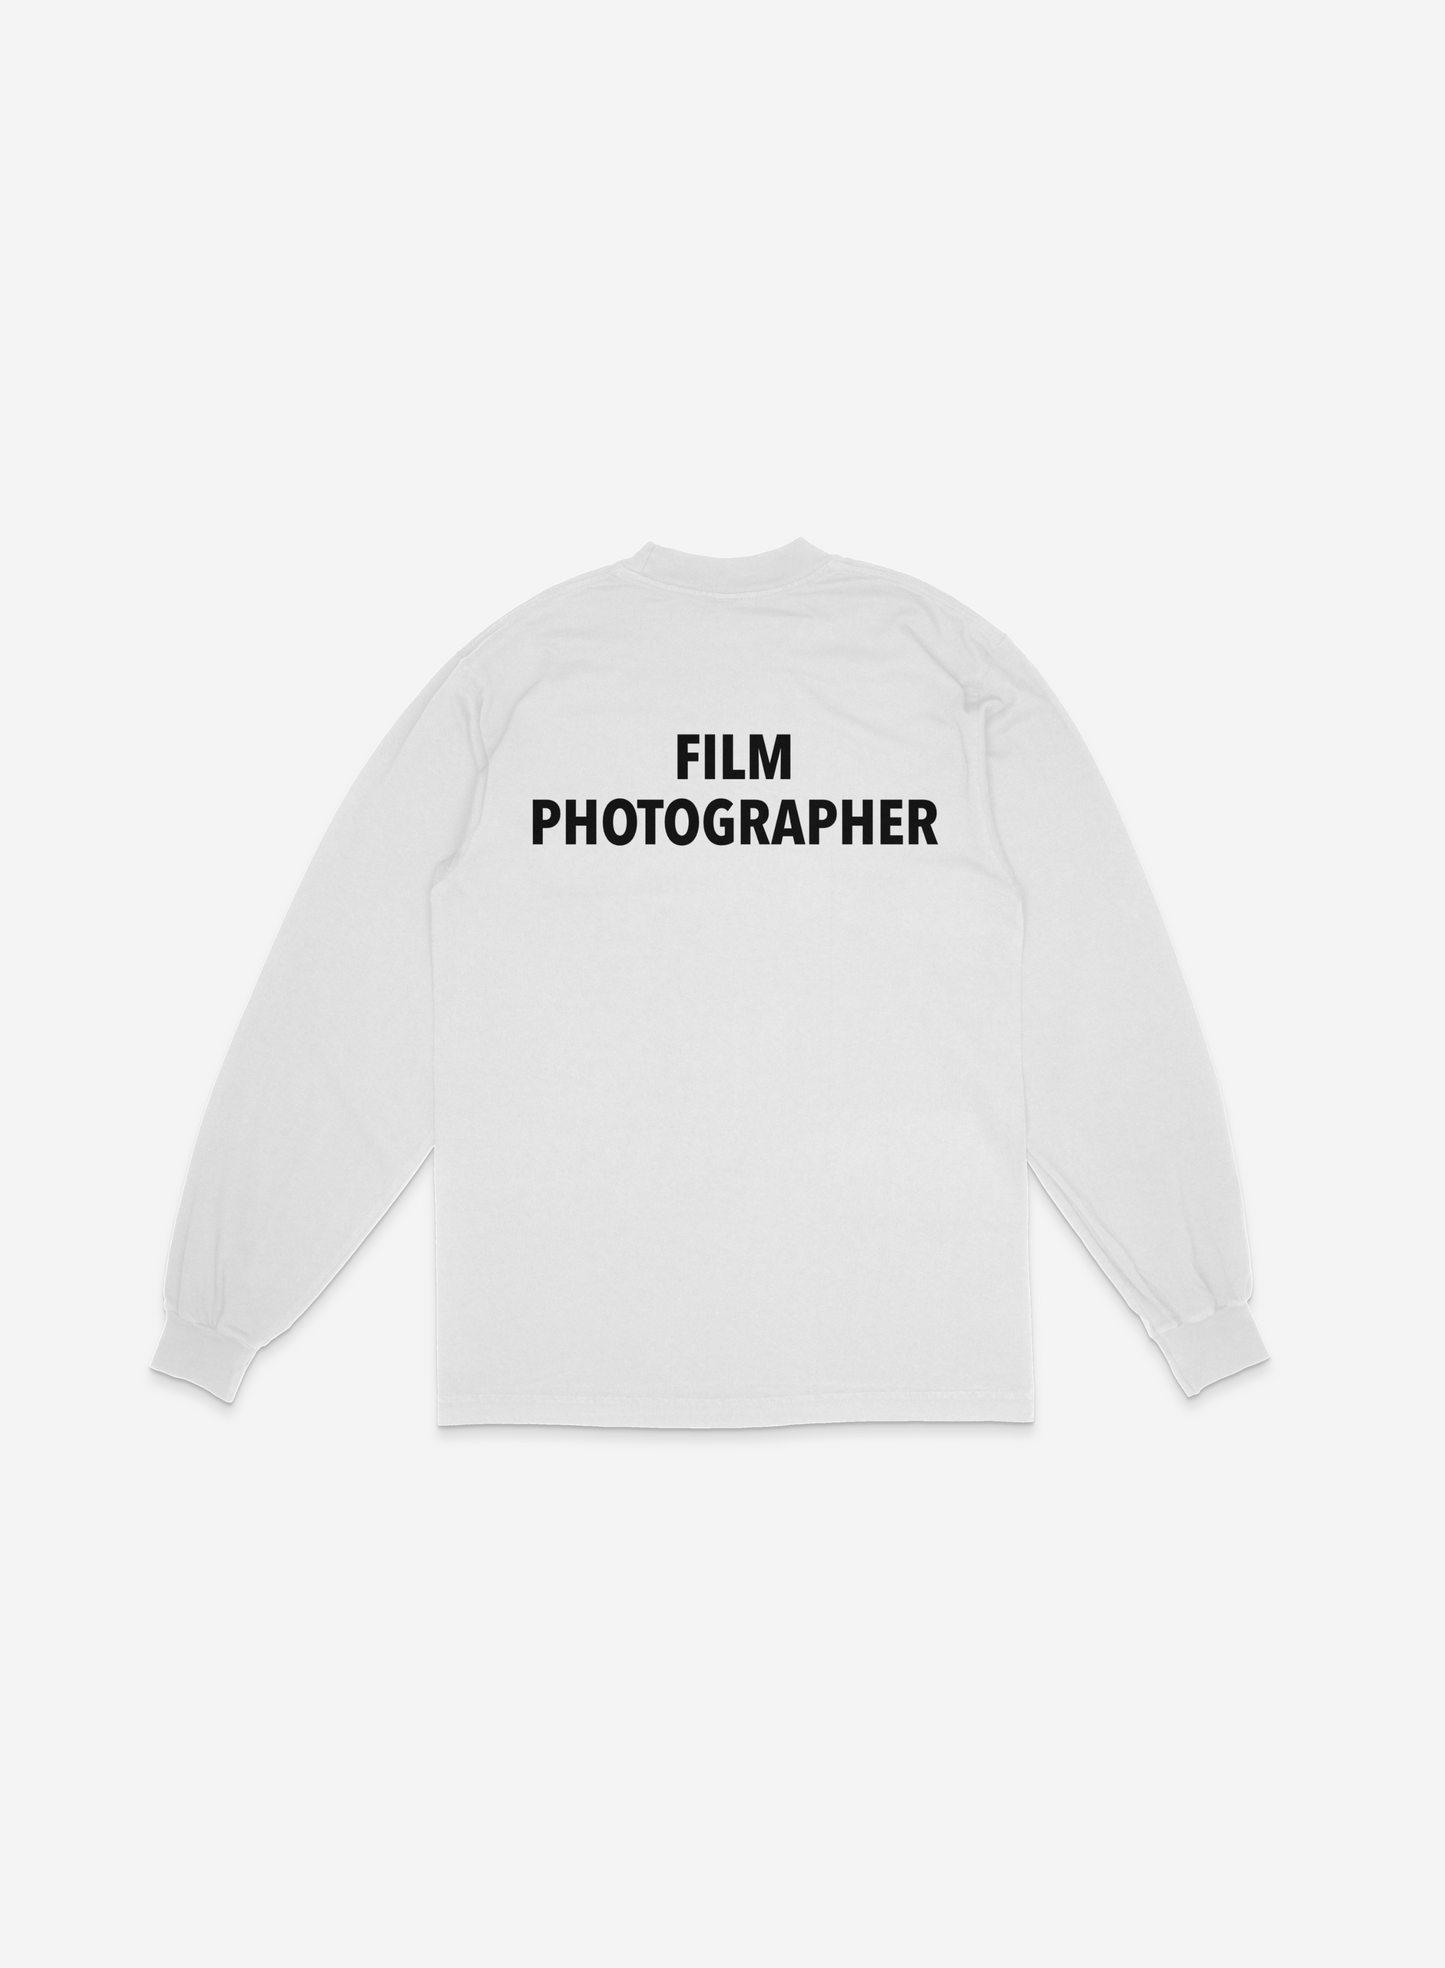 FILM PHOTOGRAPHER LONG SLEEVE (WHITE/BLACK)